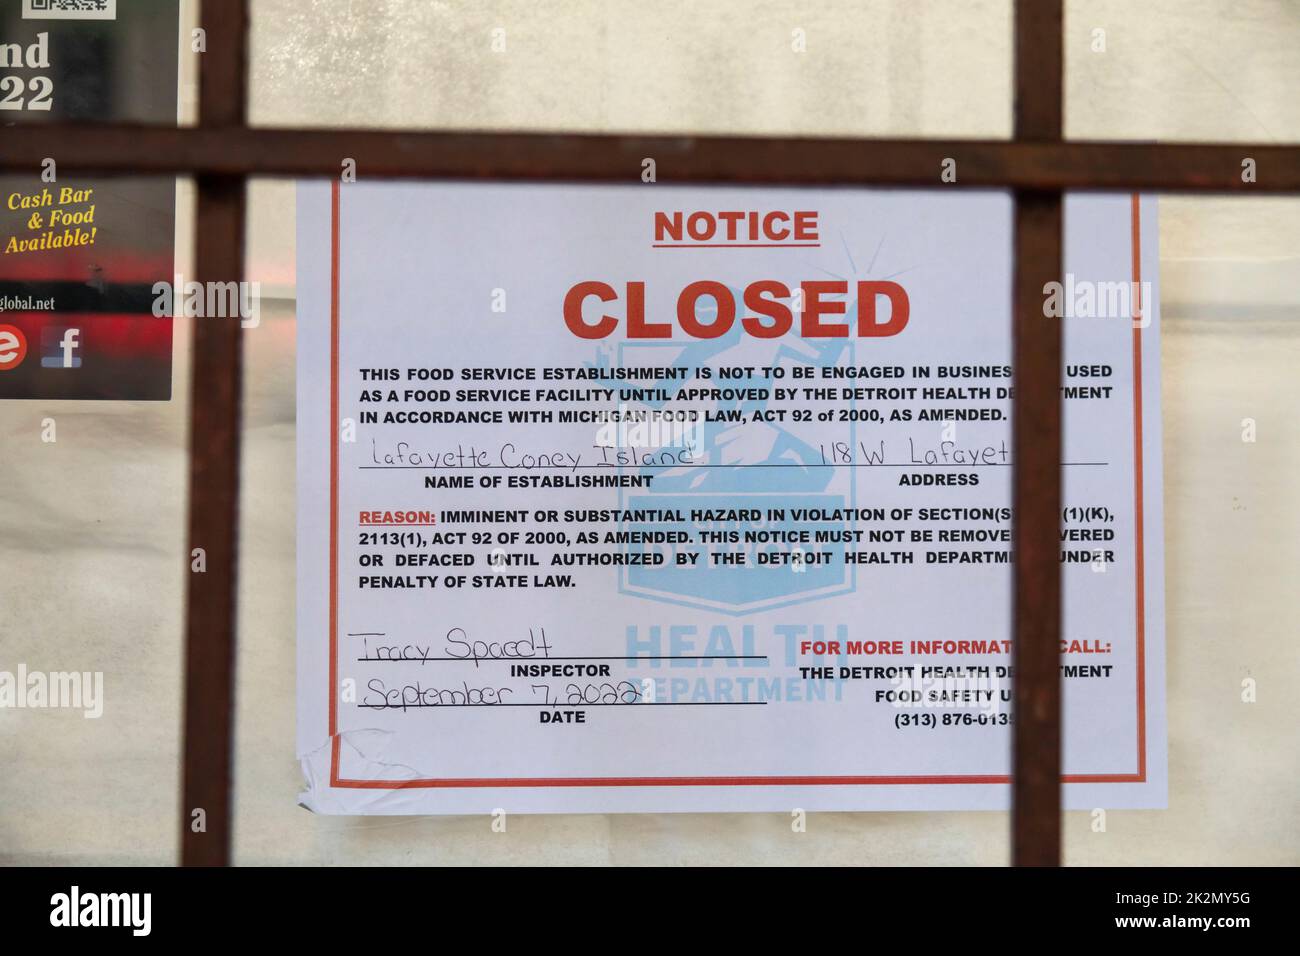 Detroit, Michigan - Una orden del departamento de salud está publicada cerrando el popular restaurante Lafayette Coney Island debido a una infestación de roedores. Foto de stock